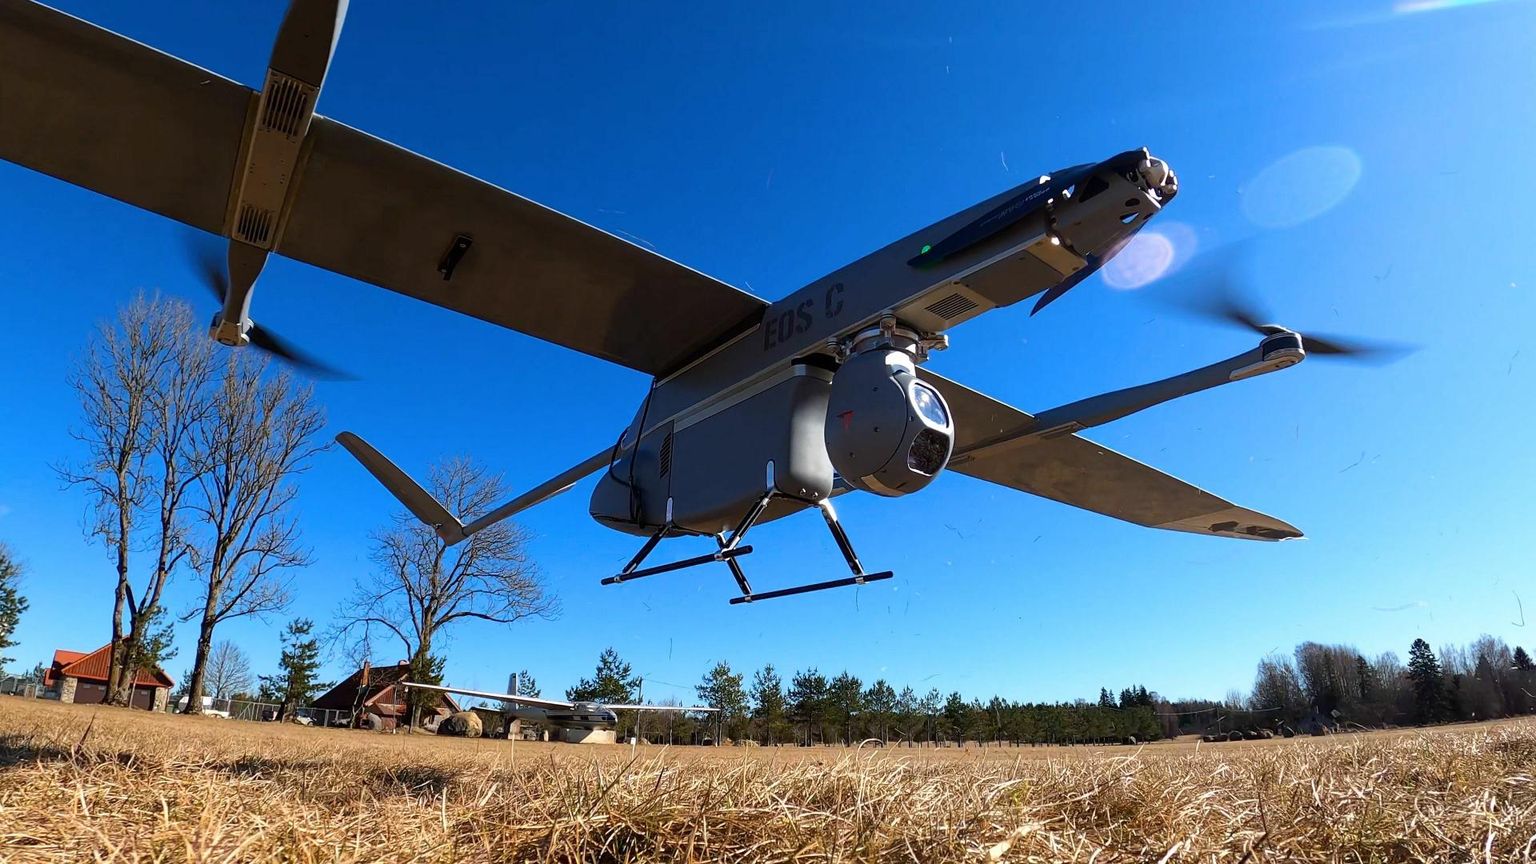 Взлет дрона происходит вертикально с помощью четырех пропеллеров. Уже в воздухе запускается  пропеллер в носовой части и  четыре мотора дрона останавливаются.